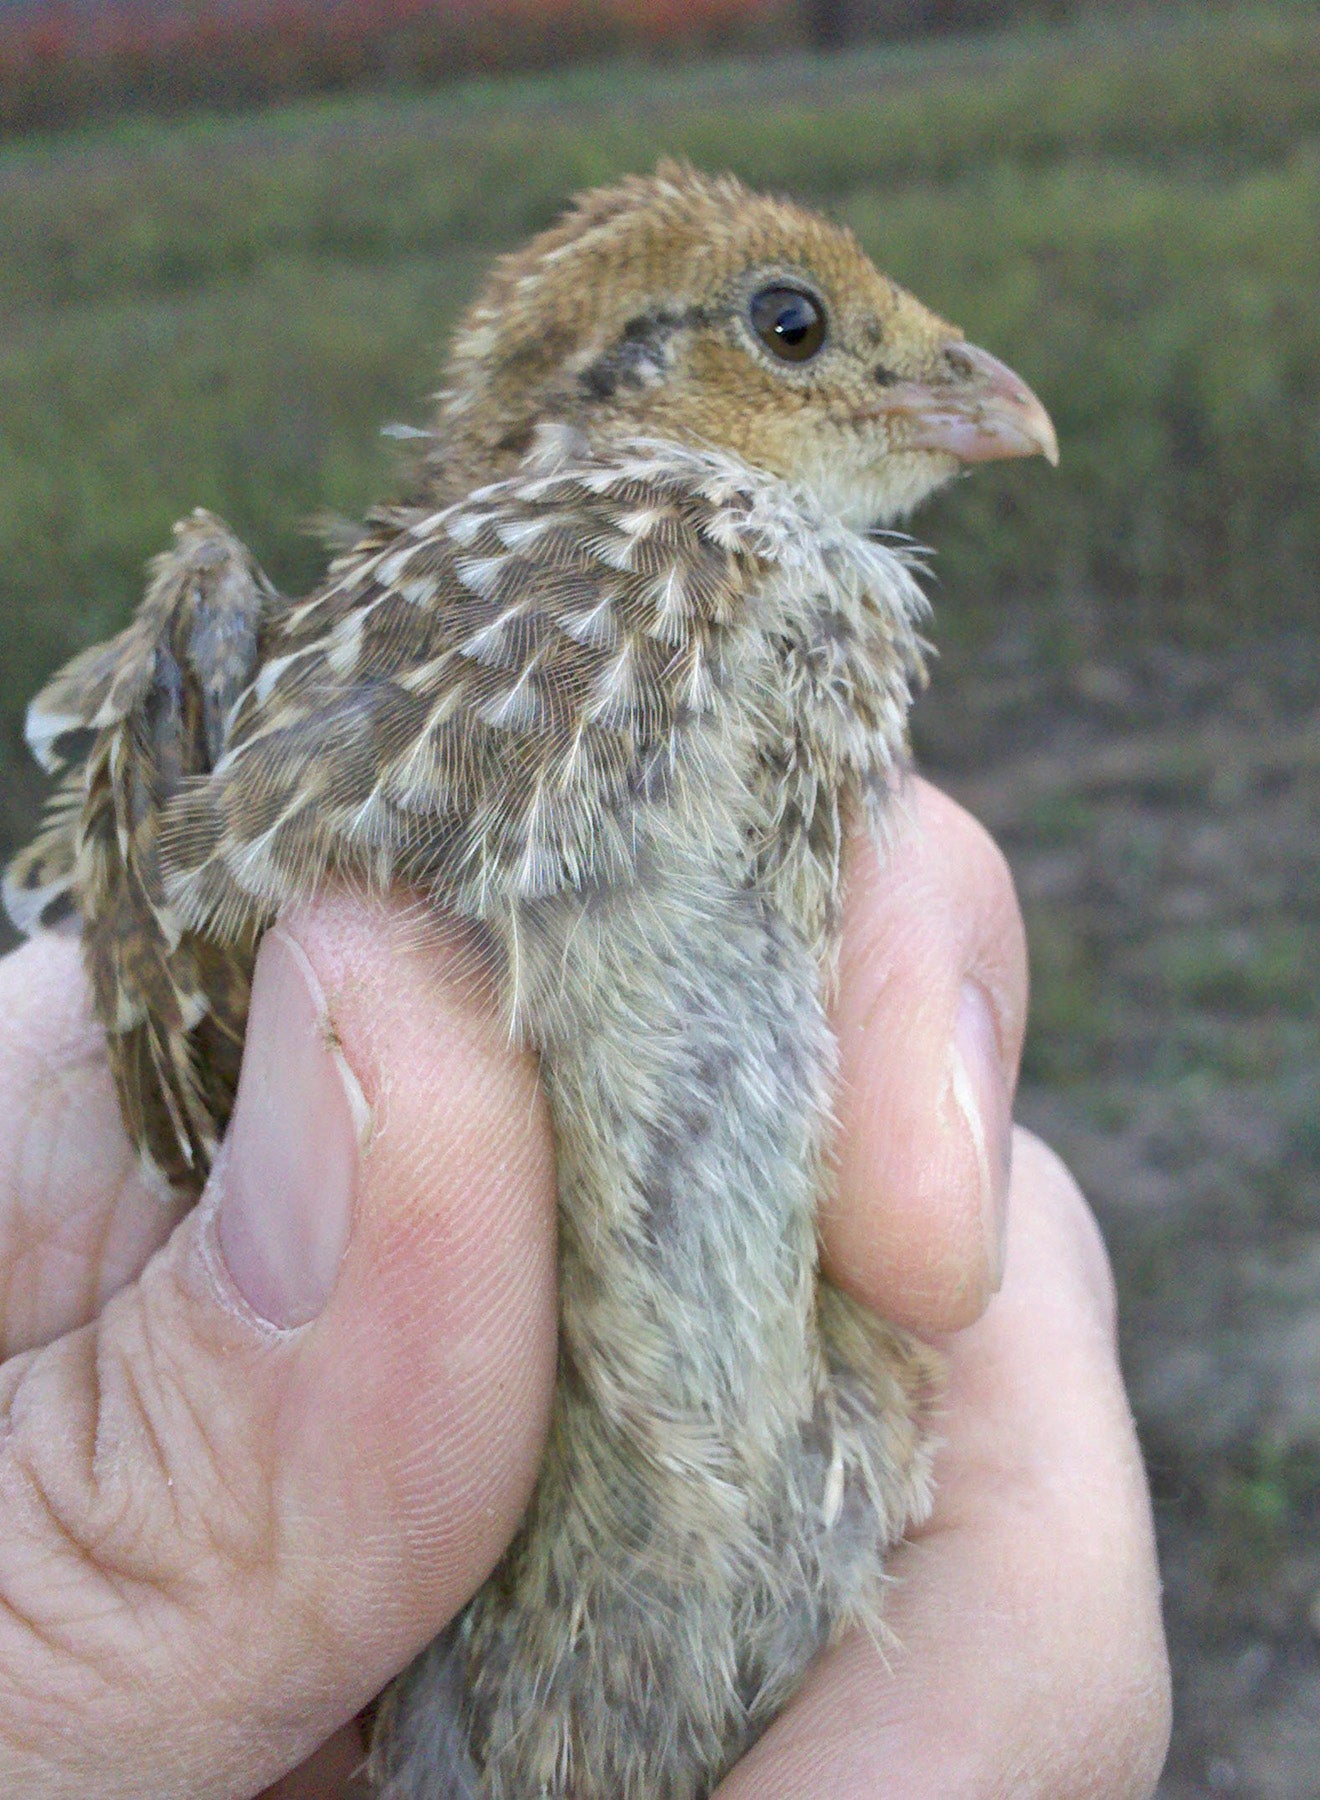 2011 late season quail chick.